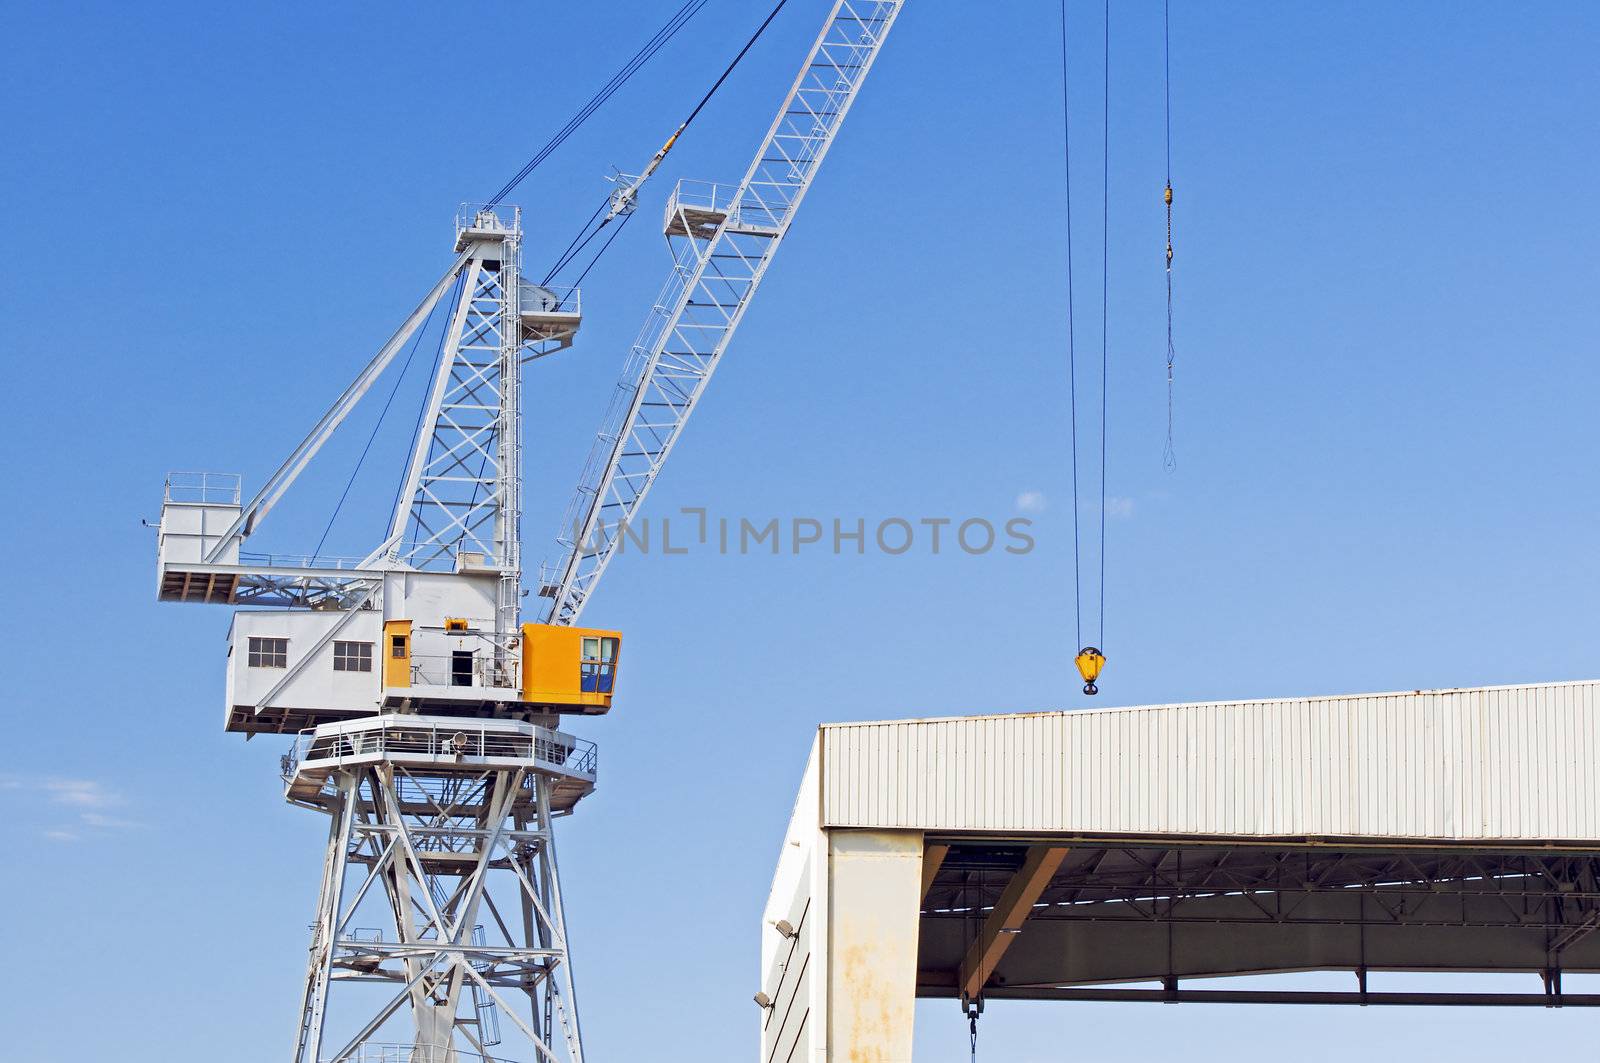 Detail of a crane under a blue sky in a shipyard